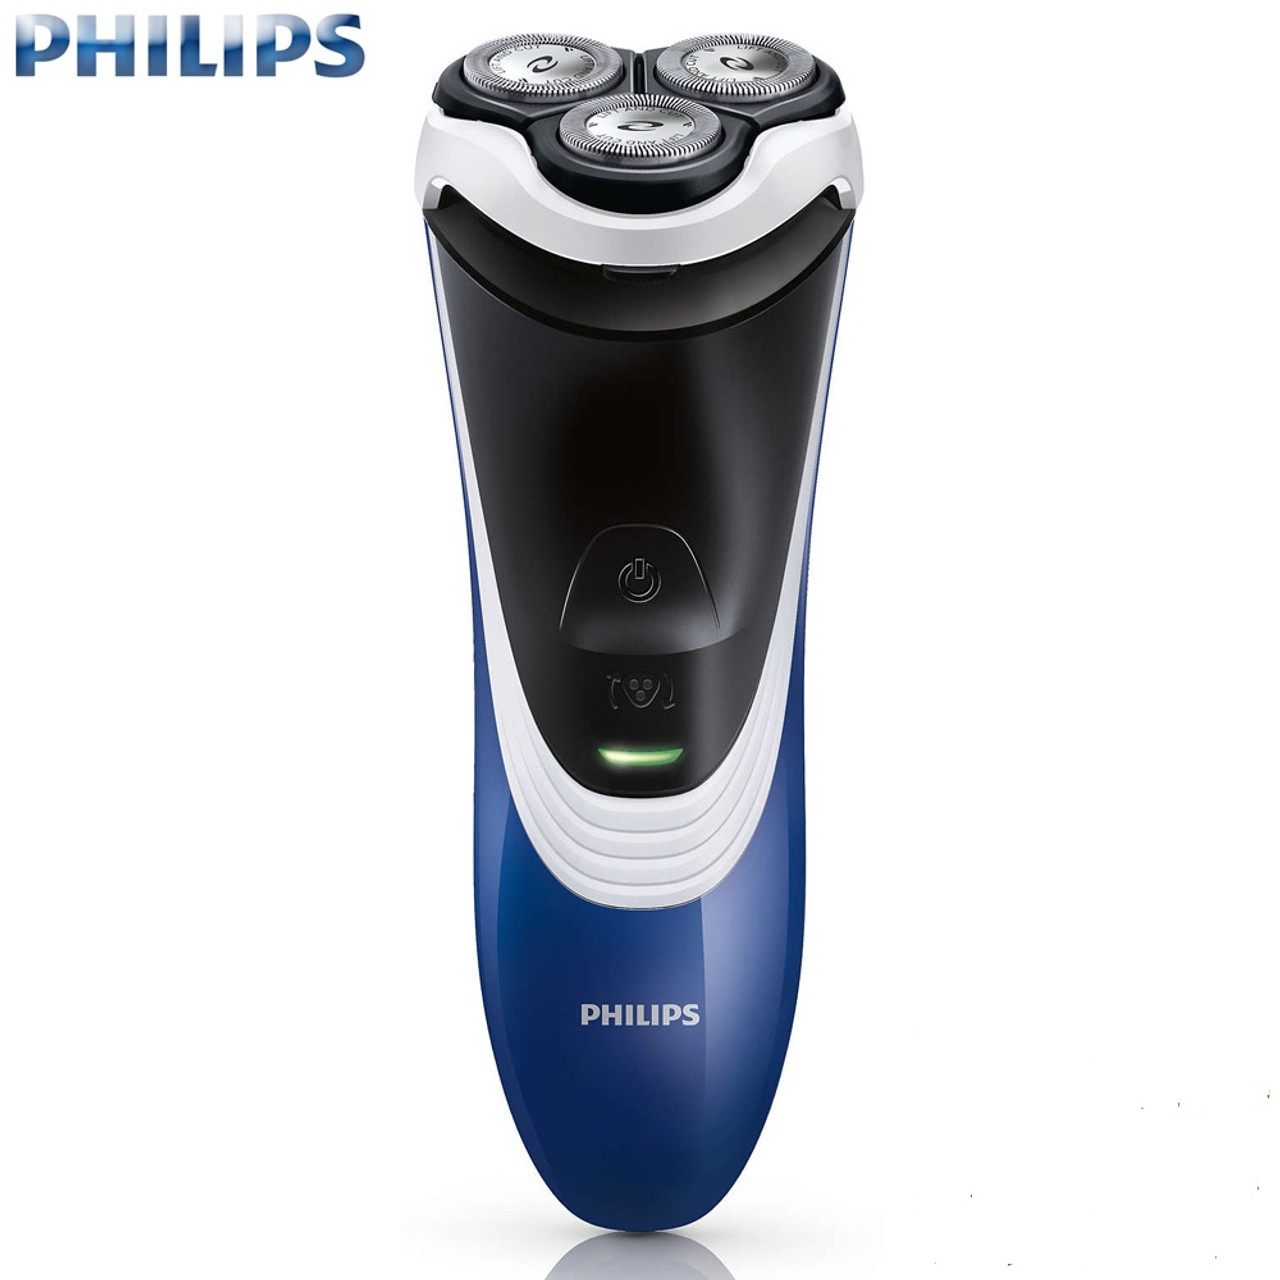 philips shaver machine